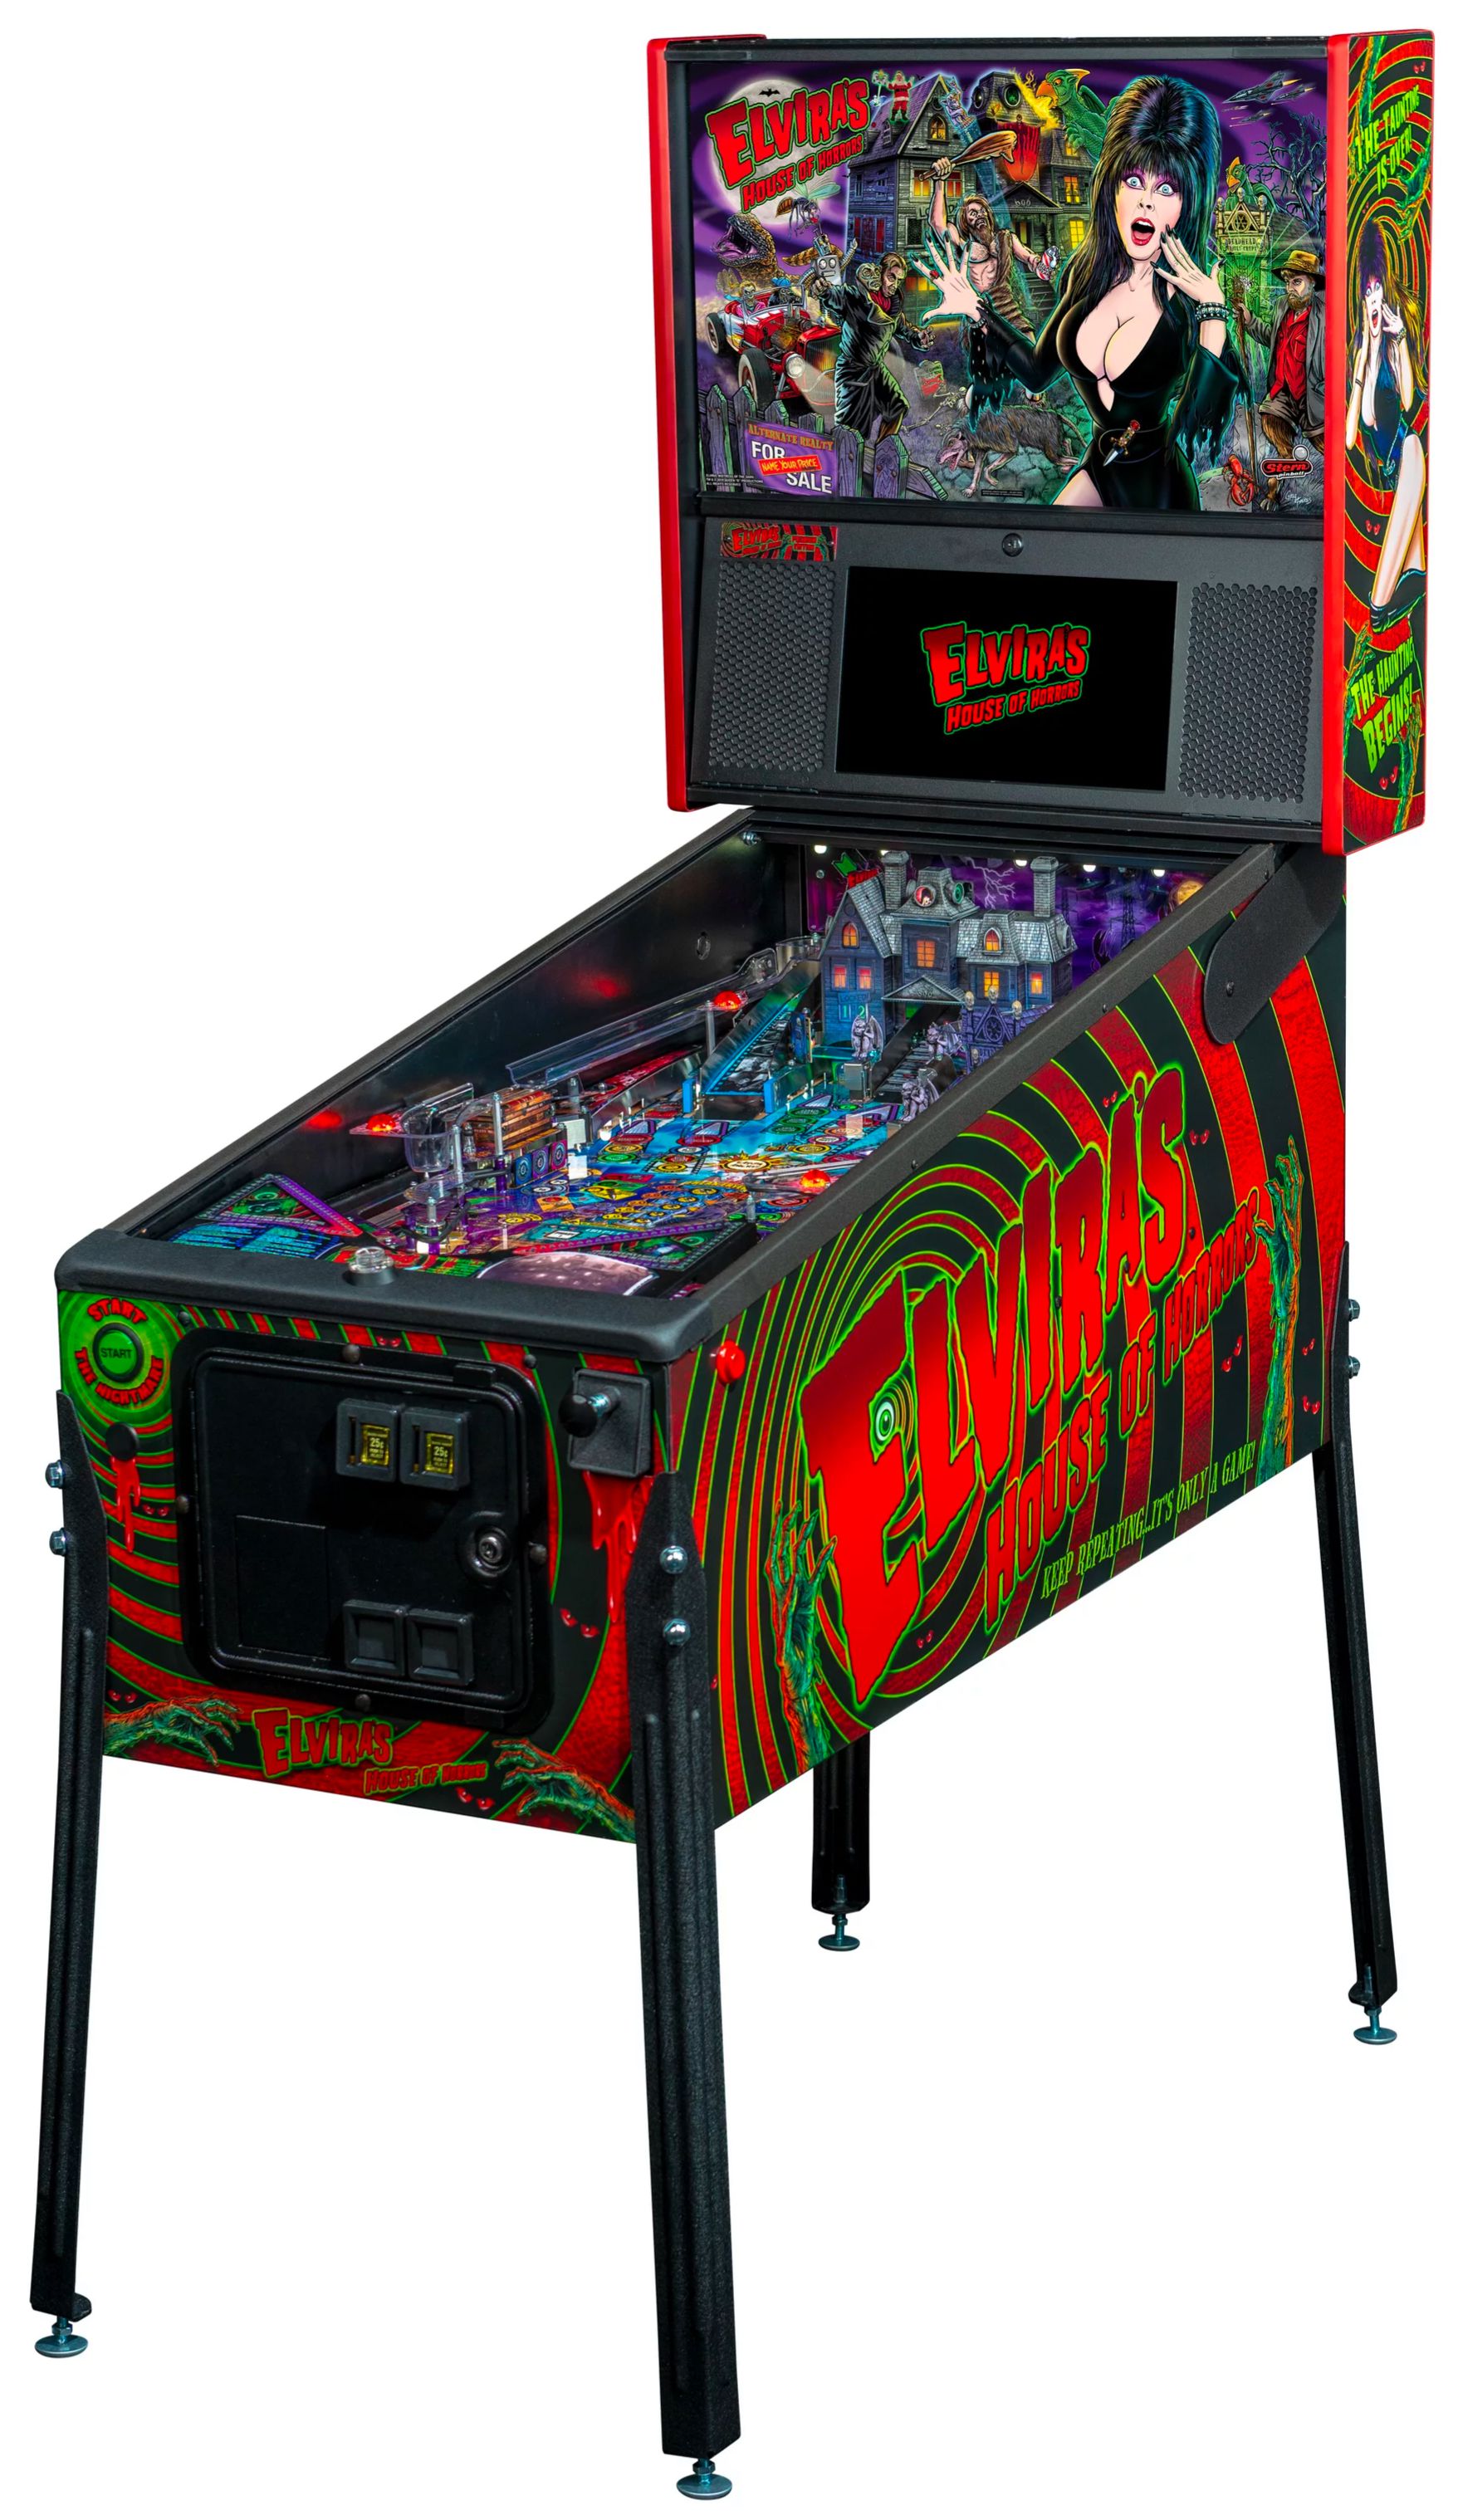 Elvira's House of Horrors Pinball machine by Stern #7